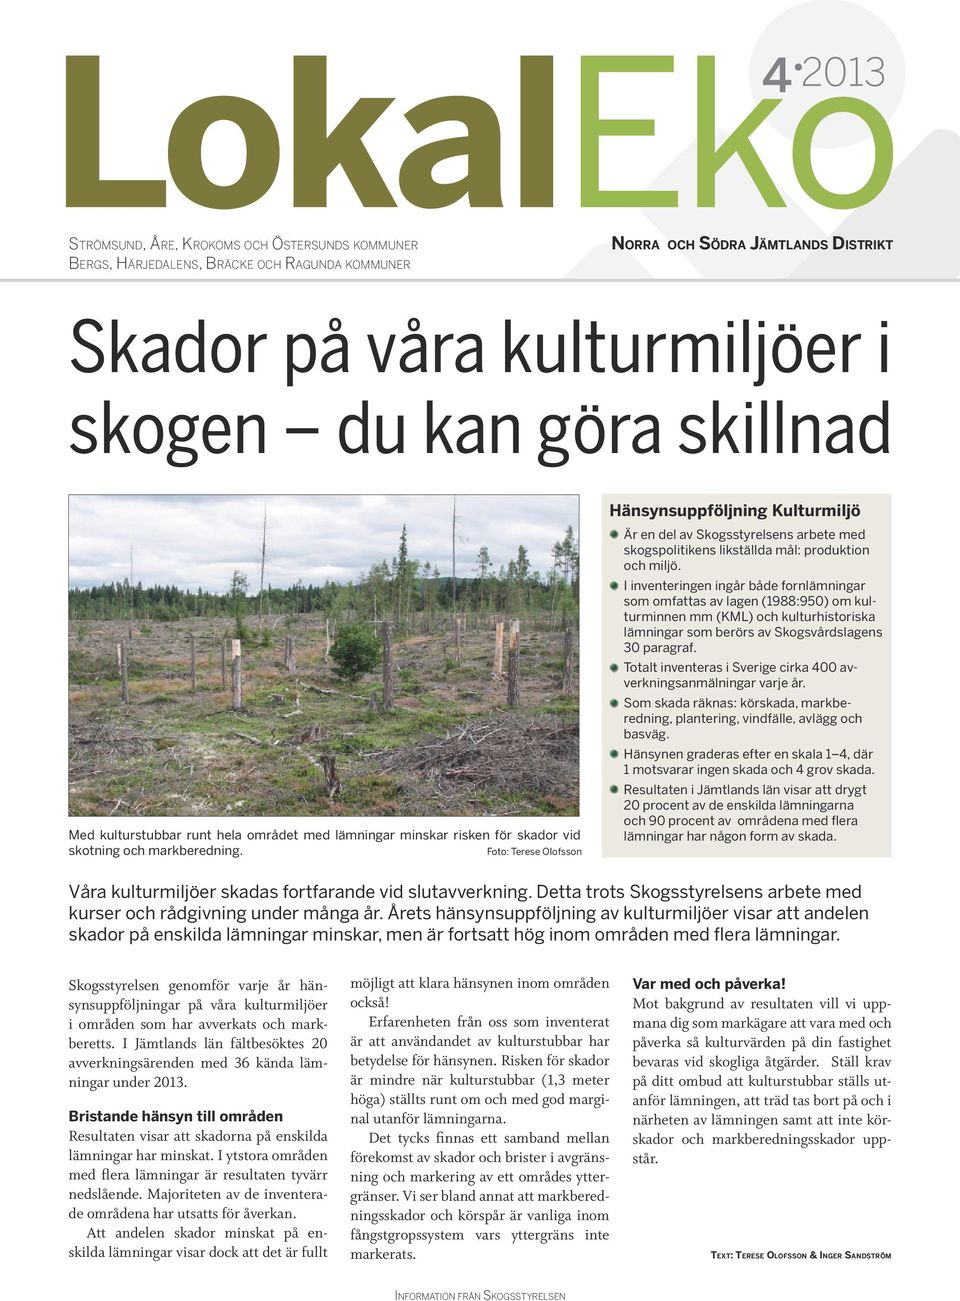 Foto: Terese Olofsson Hänsynsuppföljning Kulturmiljö Är en del av Skogsstyrelsens arbete med skogspolitikens likställda mål: produktion och miljö.